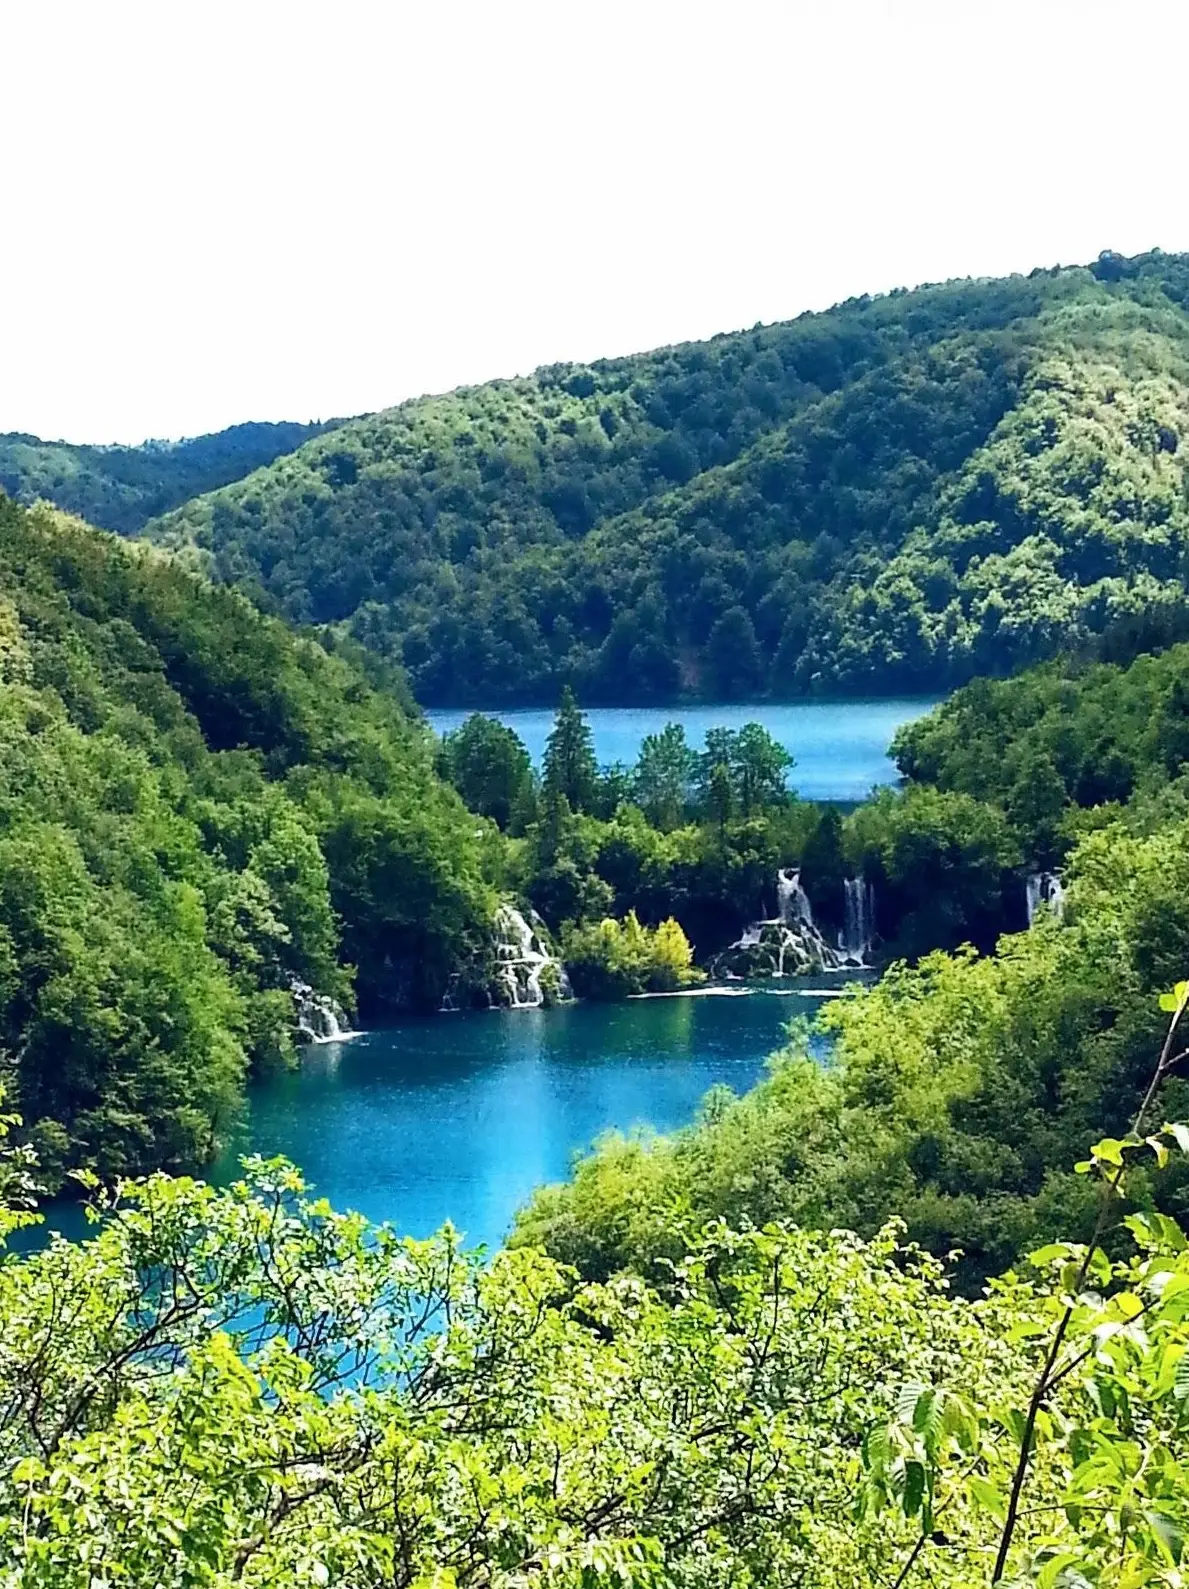 クロアチアにある絶景。世界遺産の「プリトヴィツェ湖群国立公園